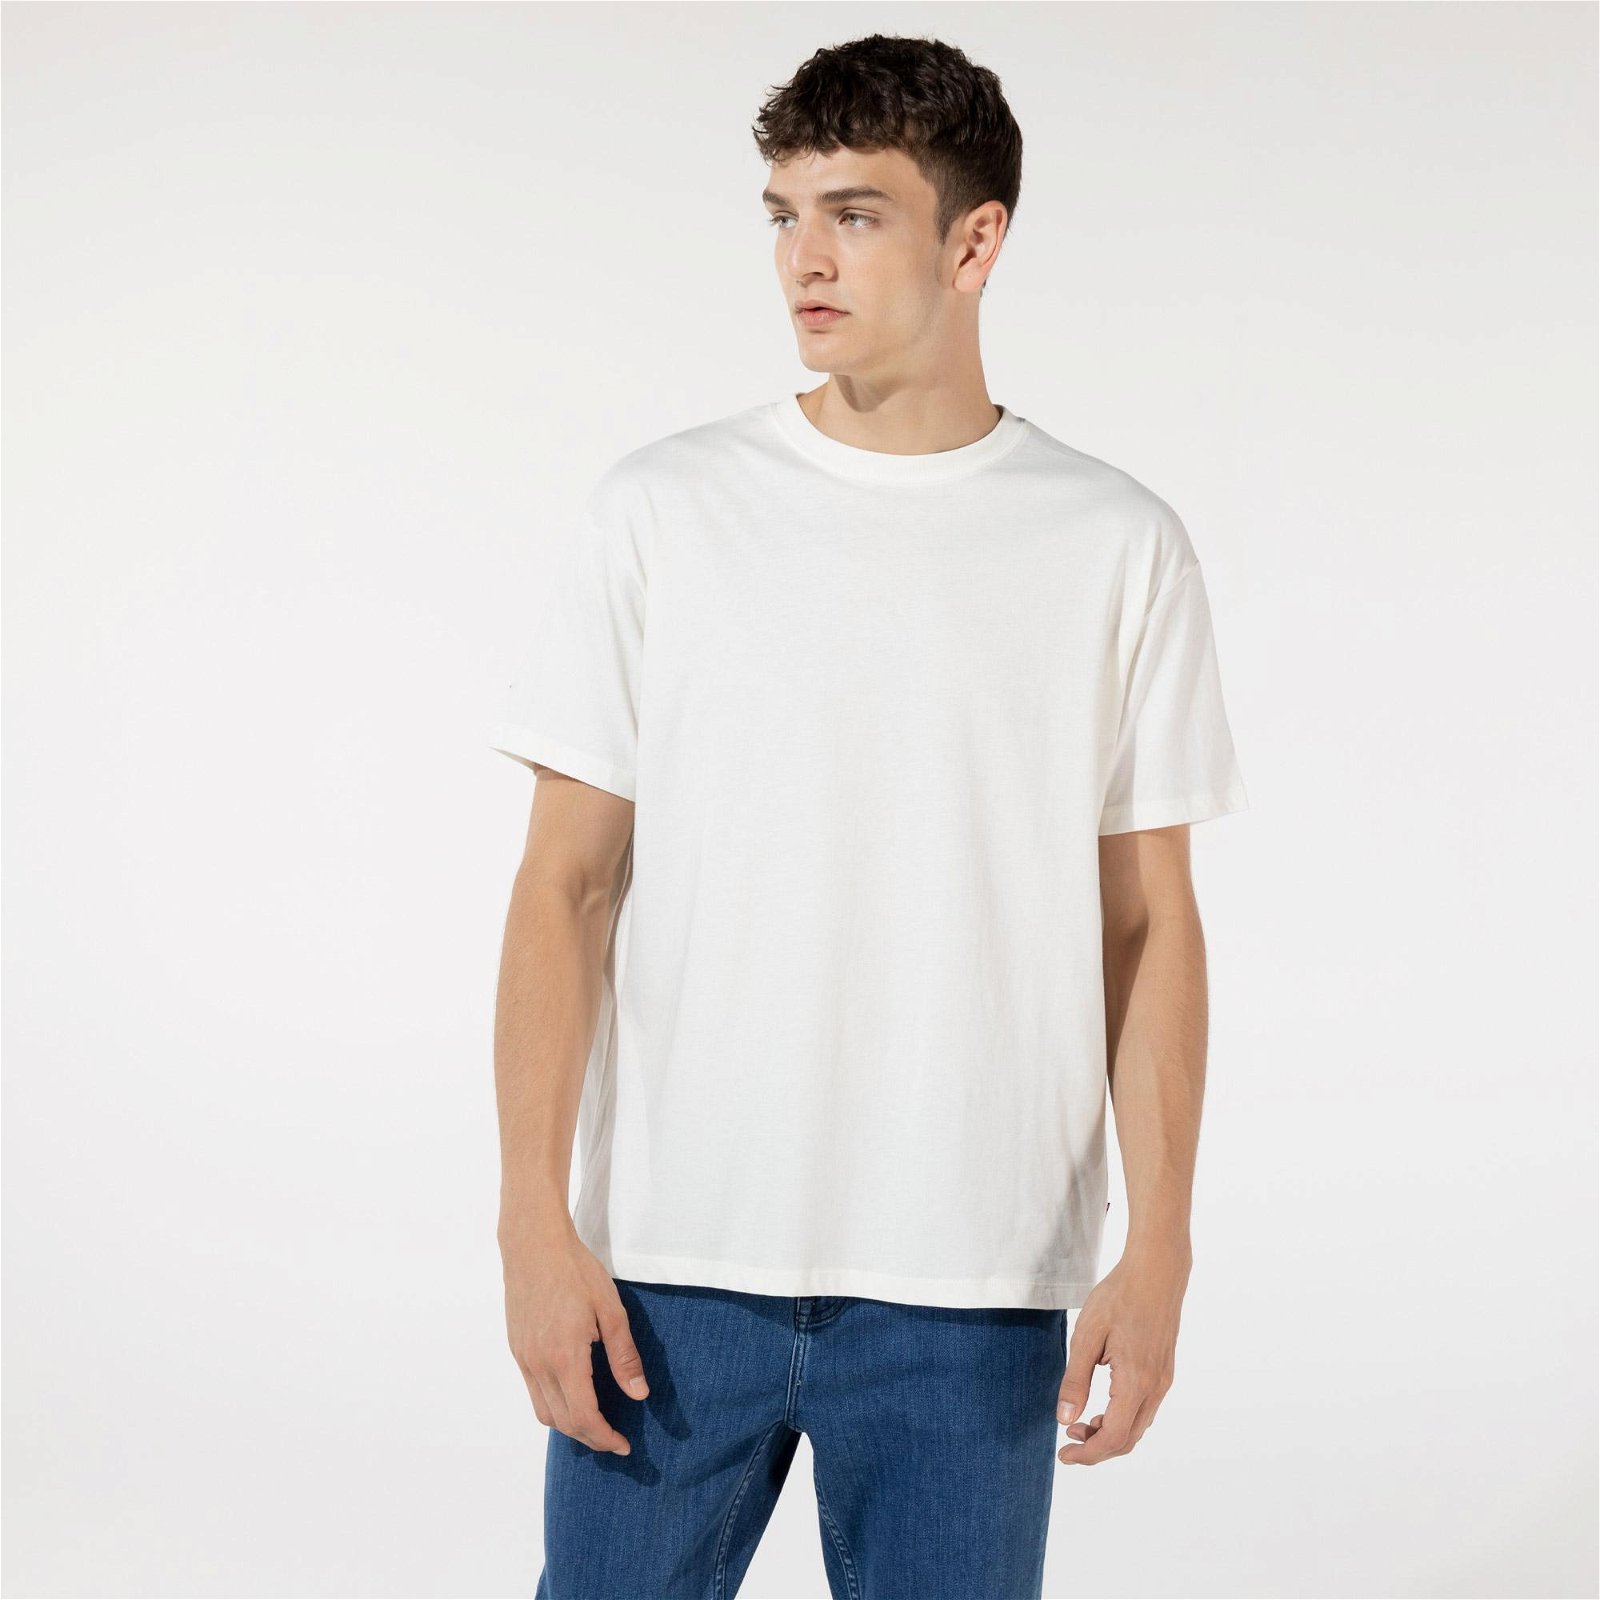 Converse Shapes Graphic Box Egret Unisex Beyaz T-Shirt